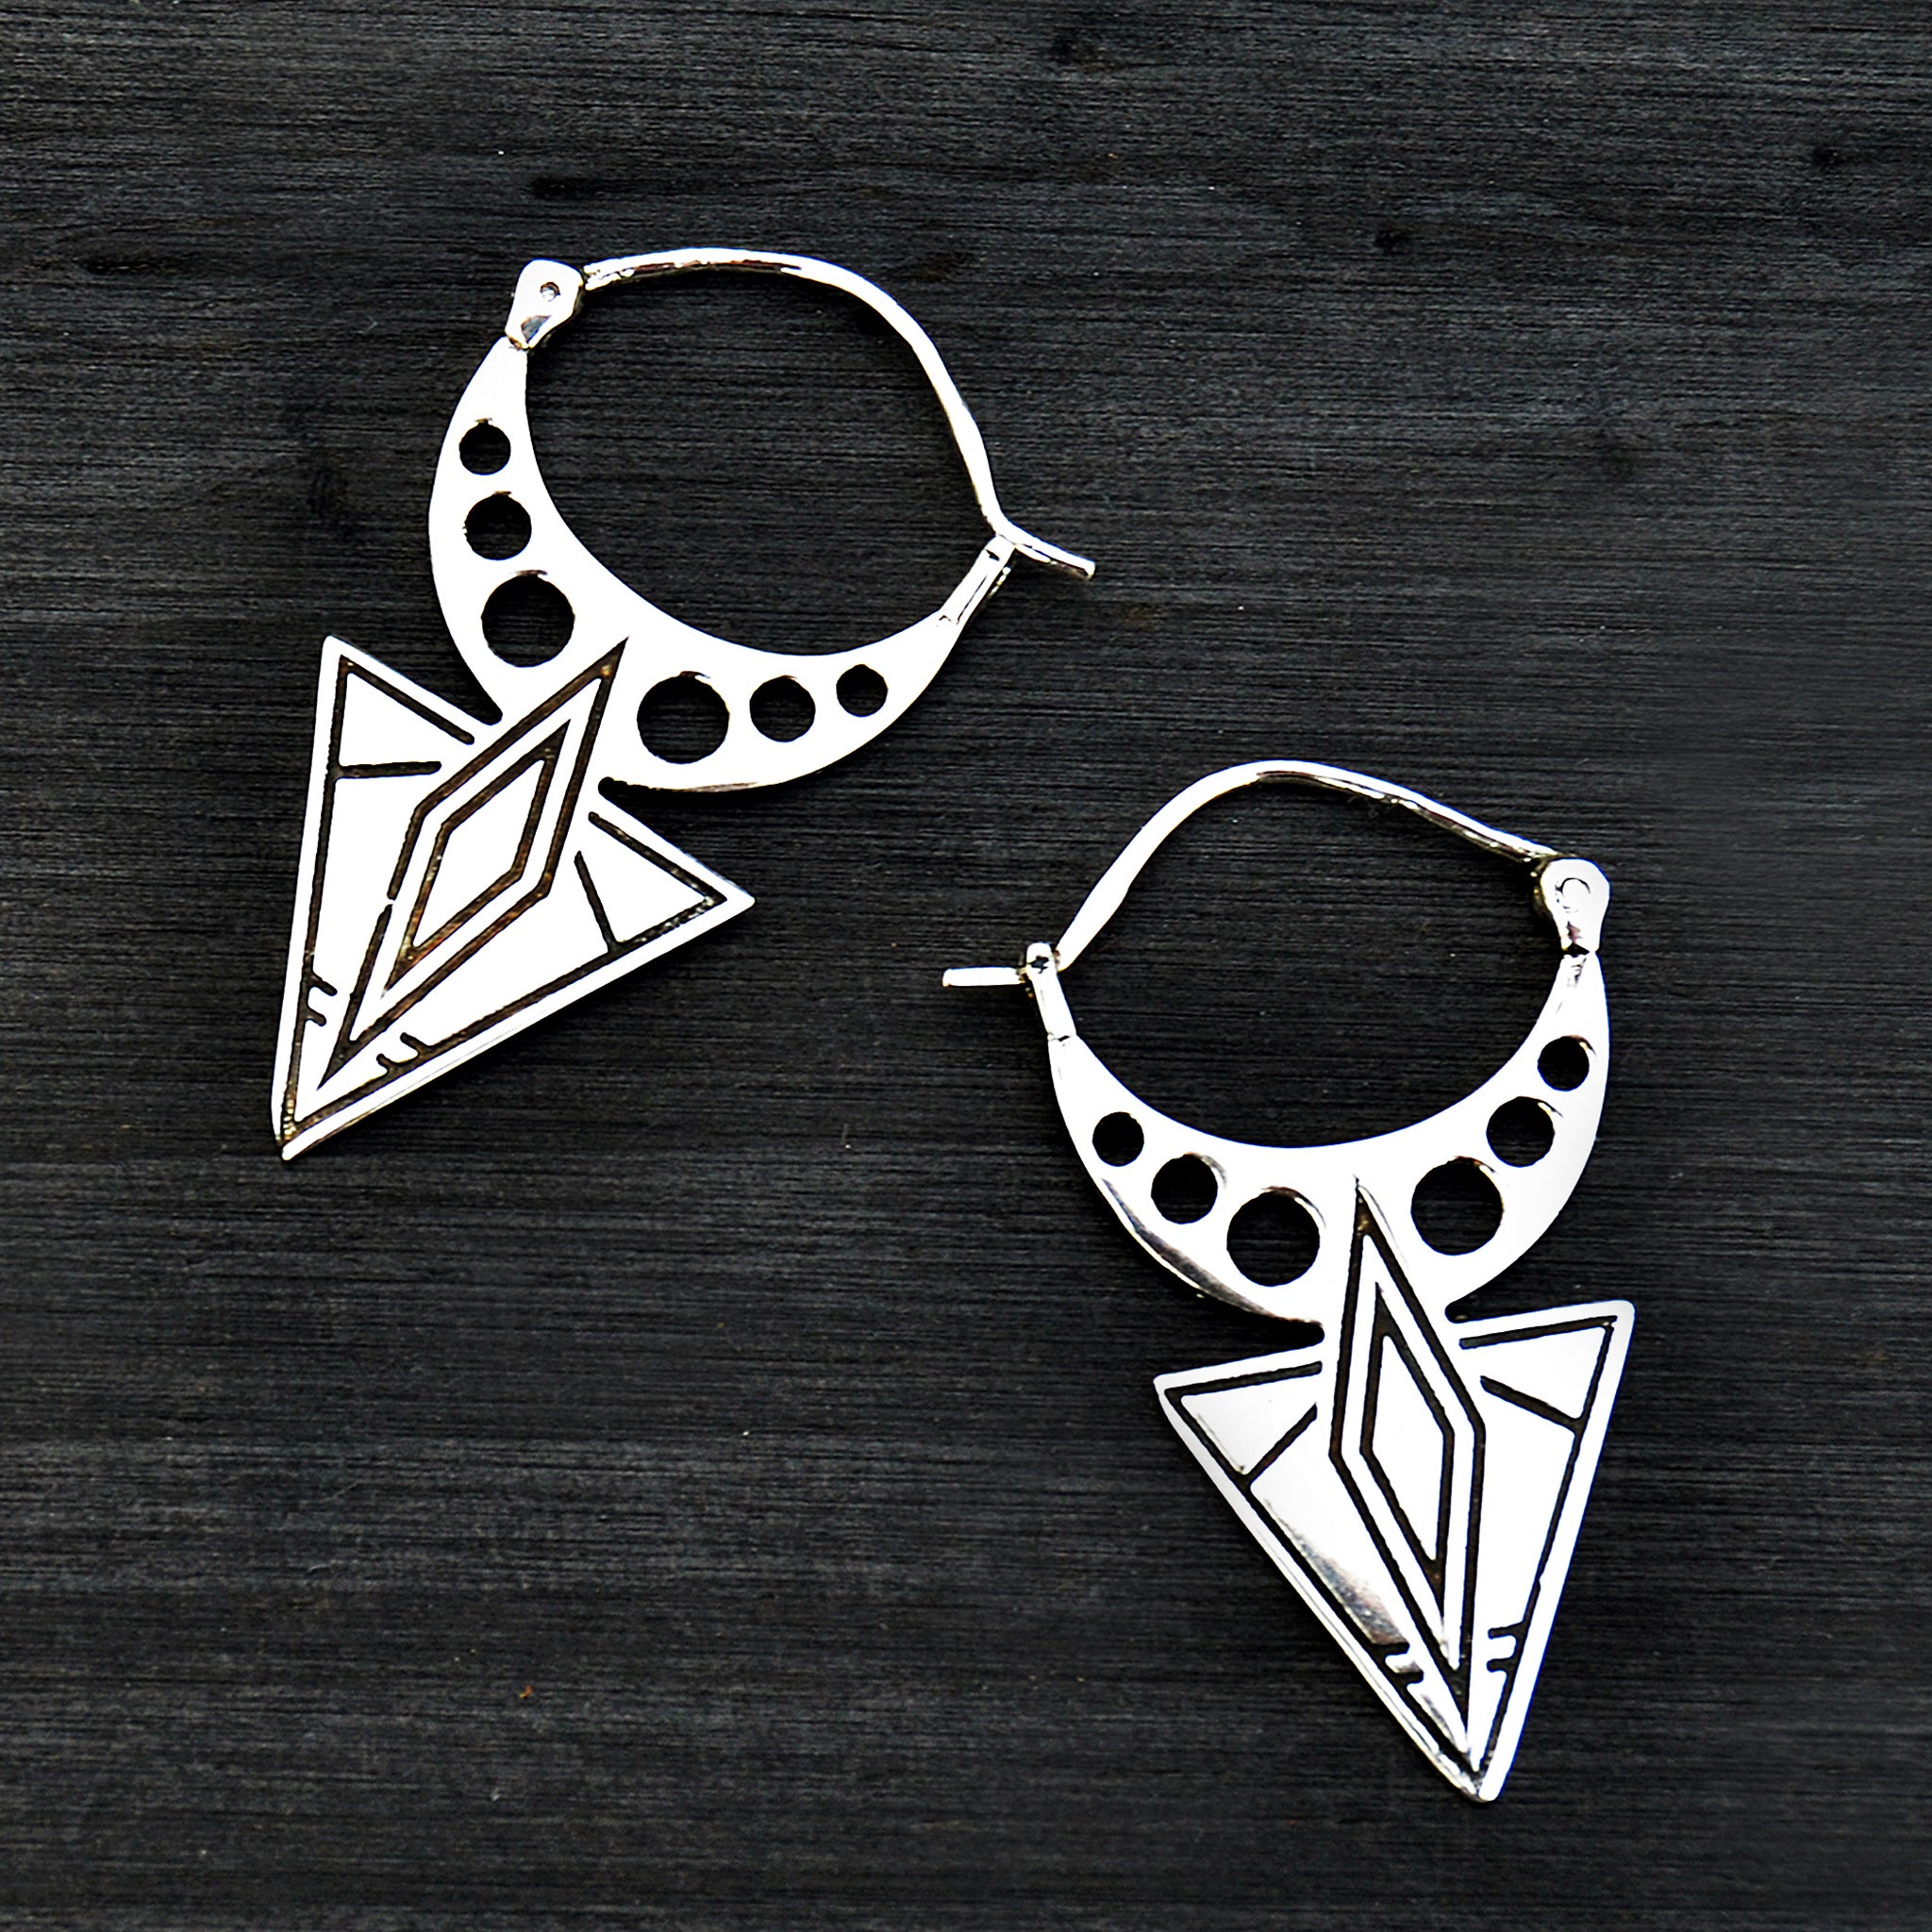 Silver aztec earrings on black background